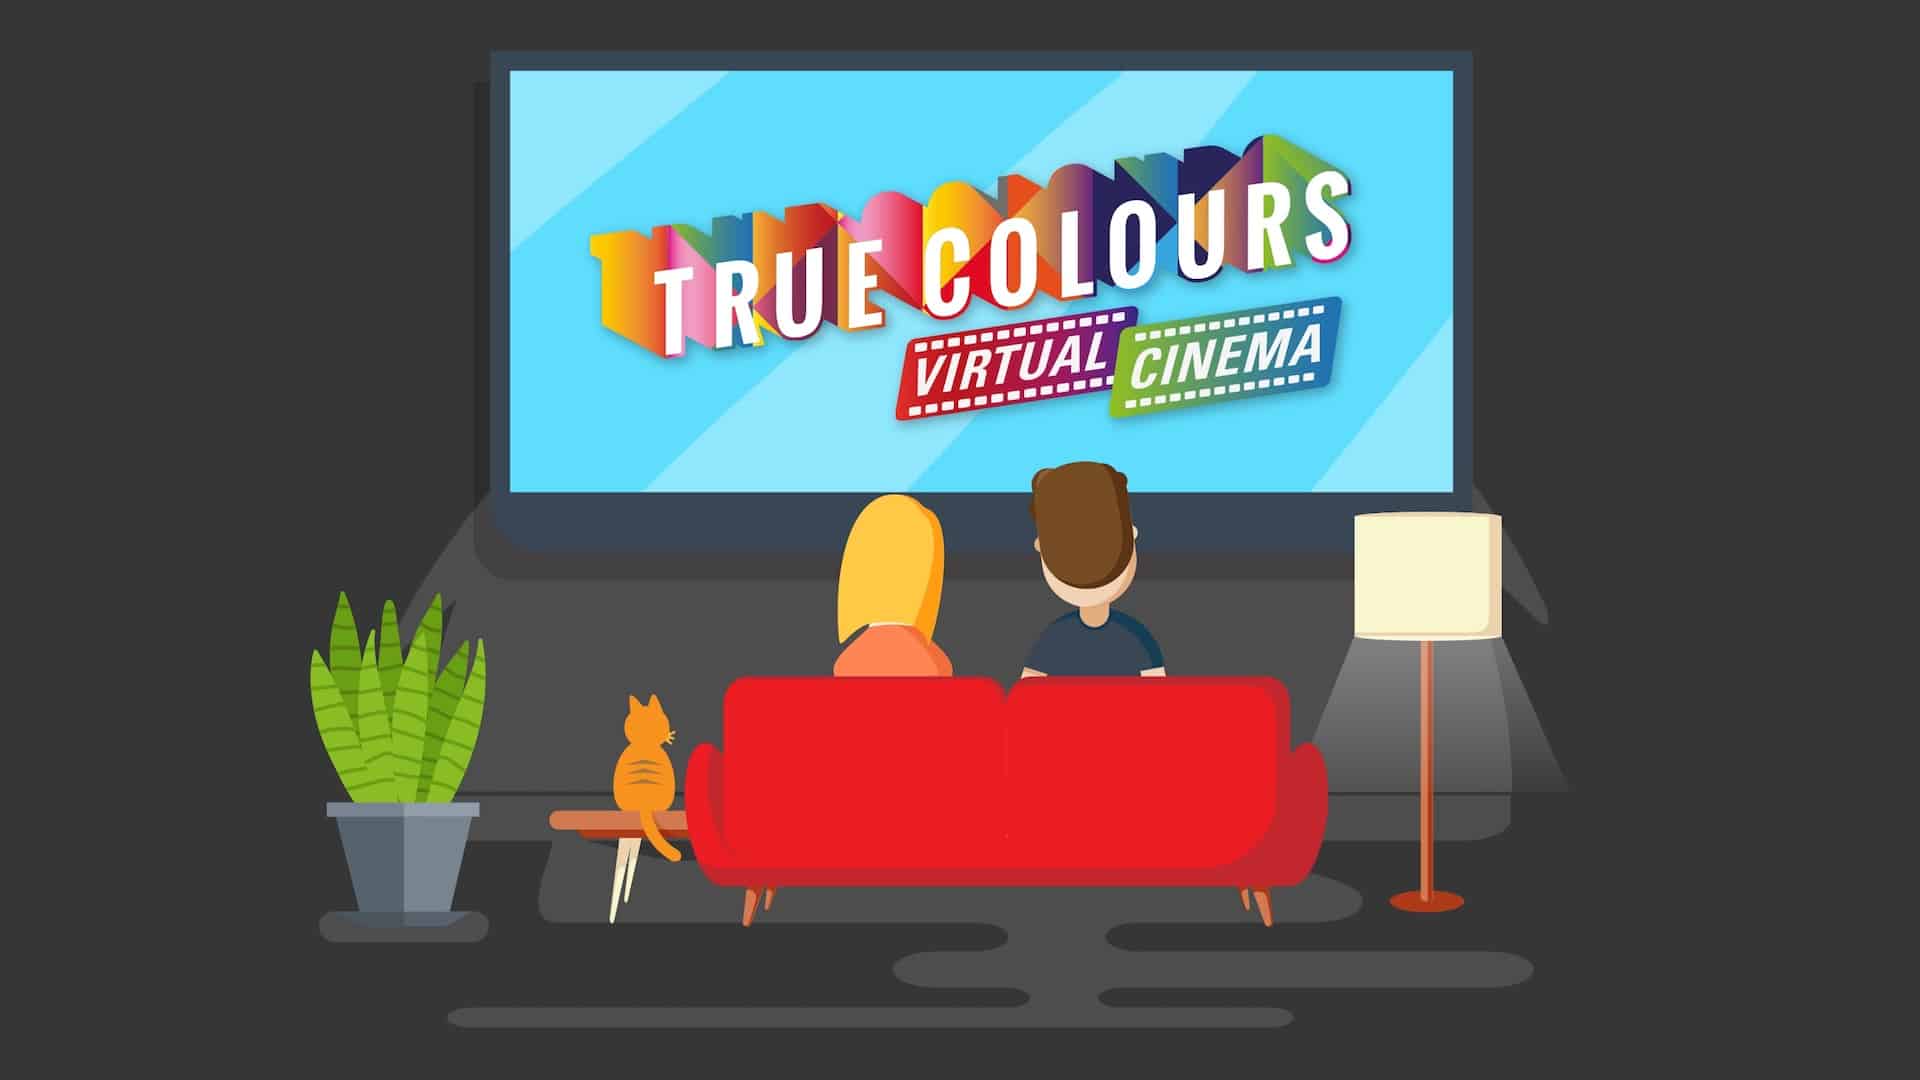 True Colours inauguara la piattaforma True Colours Virtual Cinema